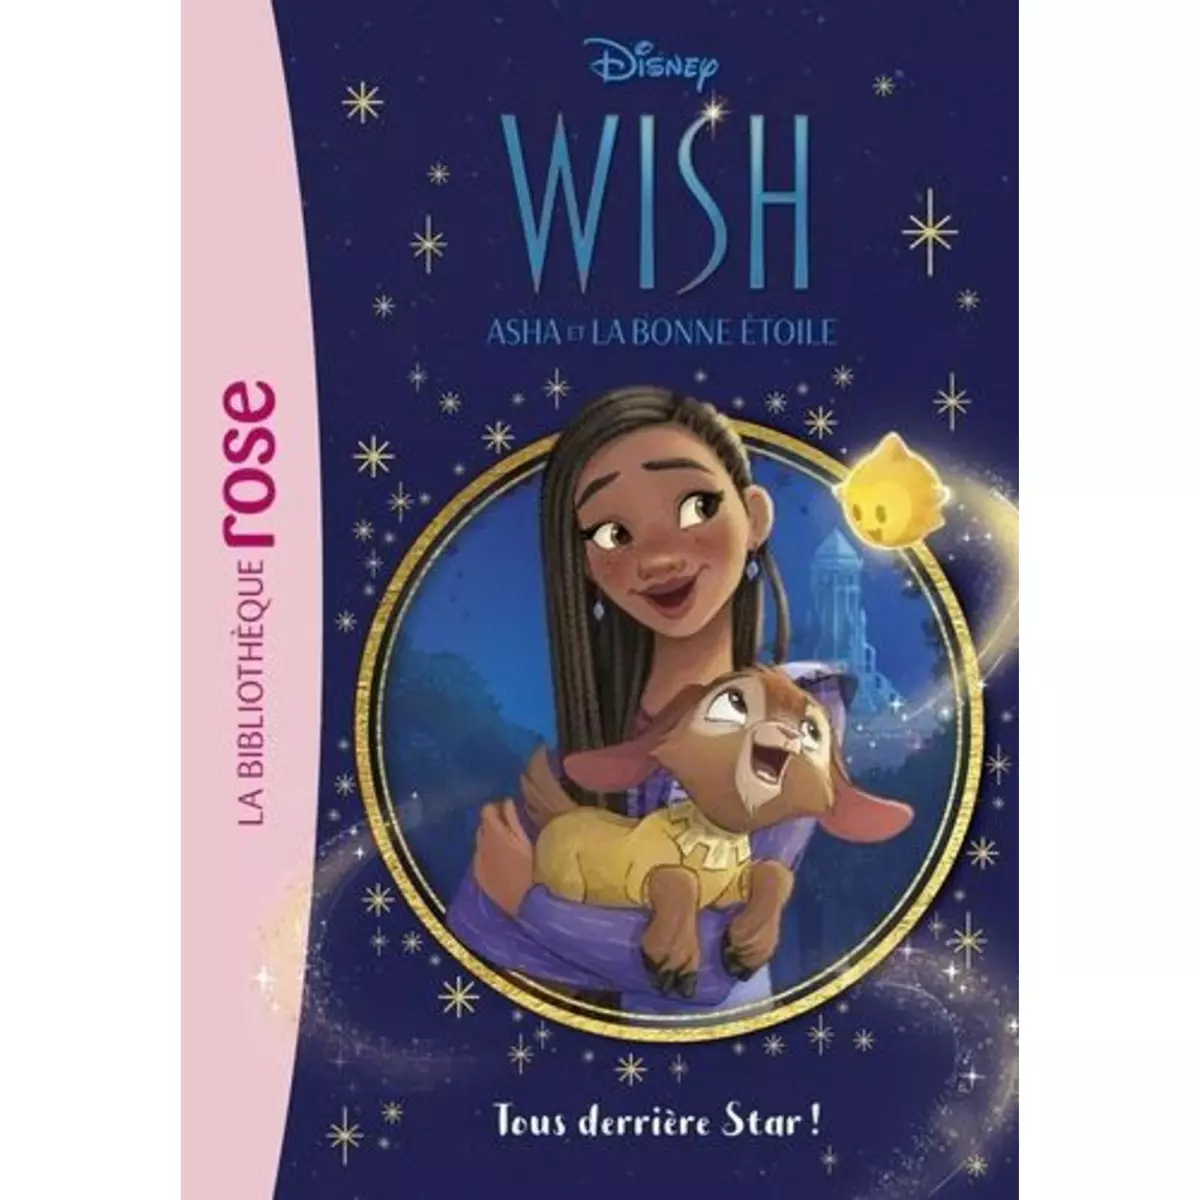  WISH, ASHA ET LA BONNE ETOILE TOME 1 : TOUS DERRIERE STAR !, Disney